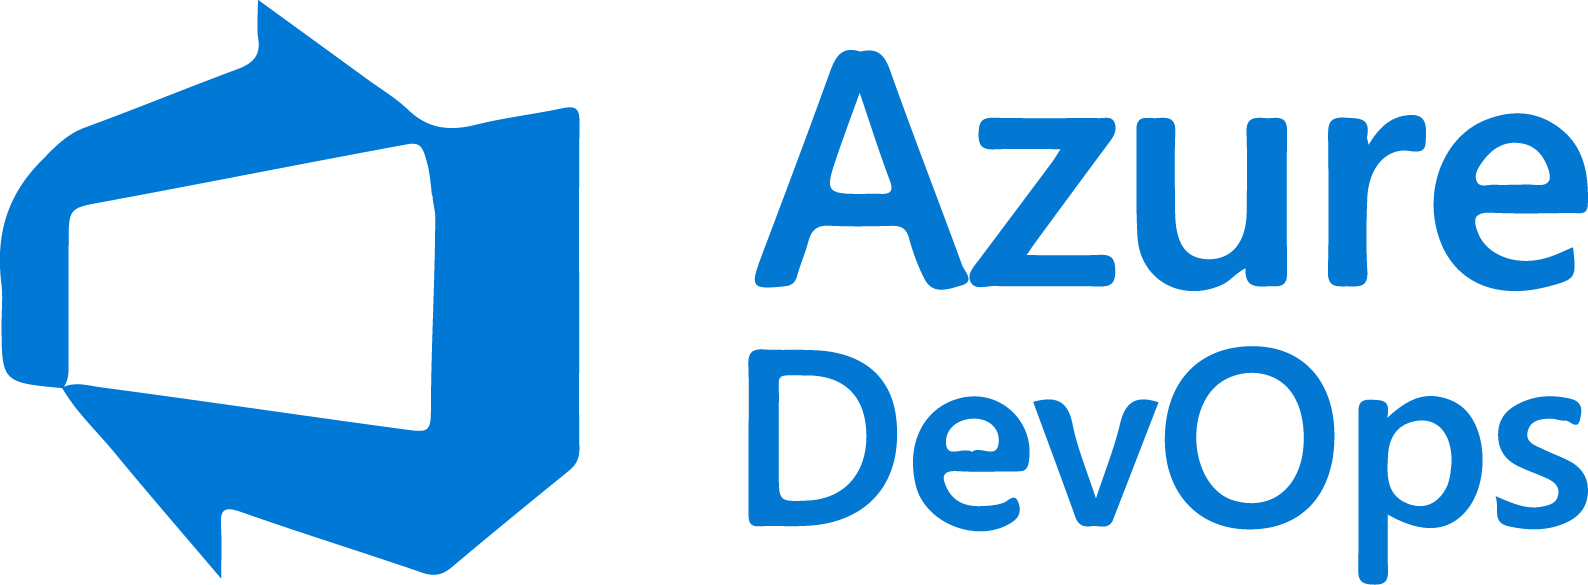 Azure-devops